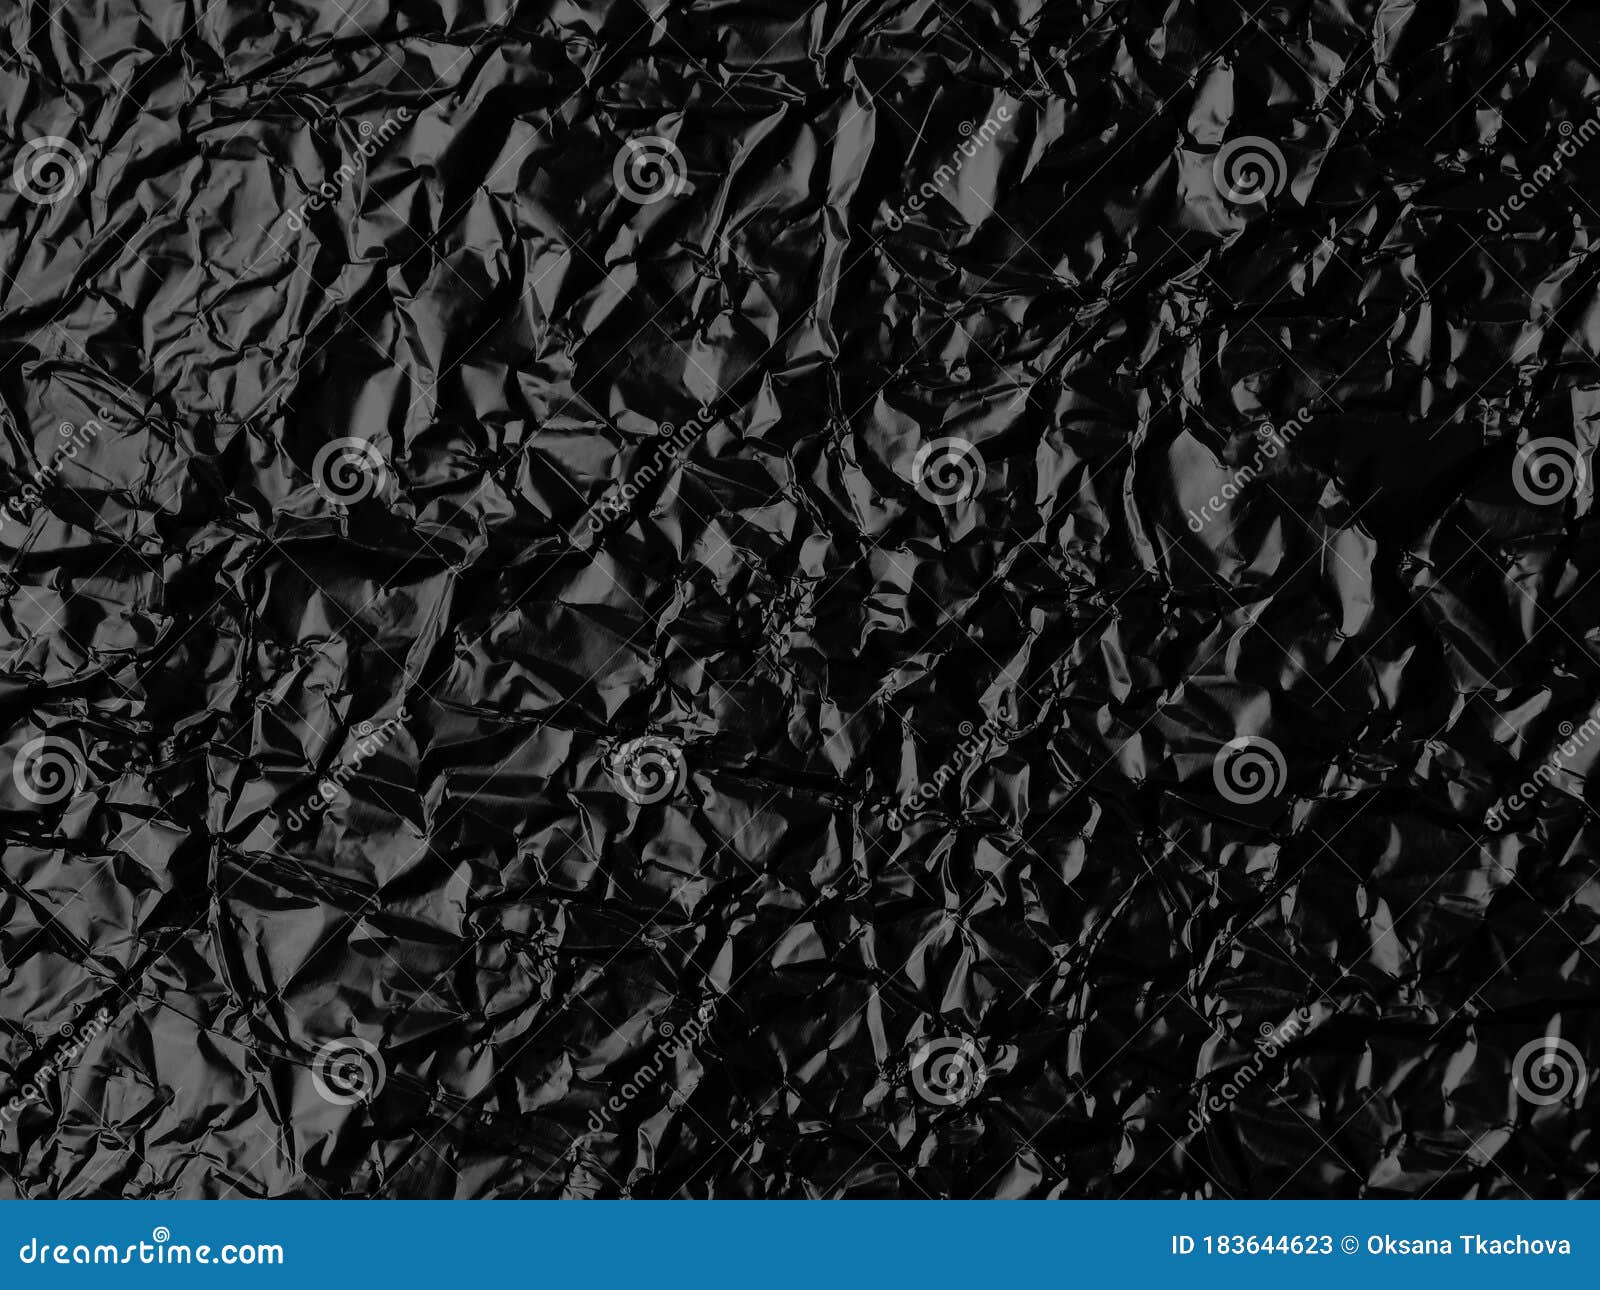 Wrinkled Black Foil Texture Background Stock Image - Image of light ...